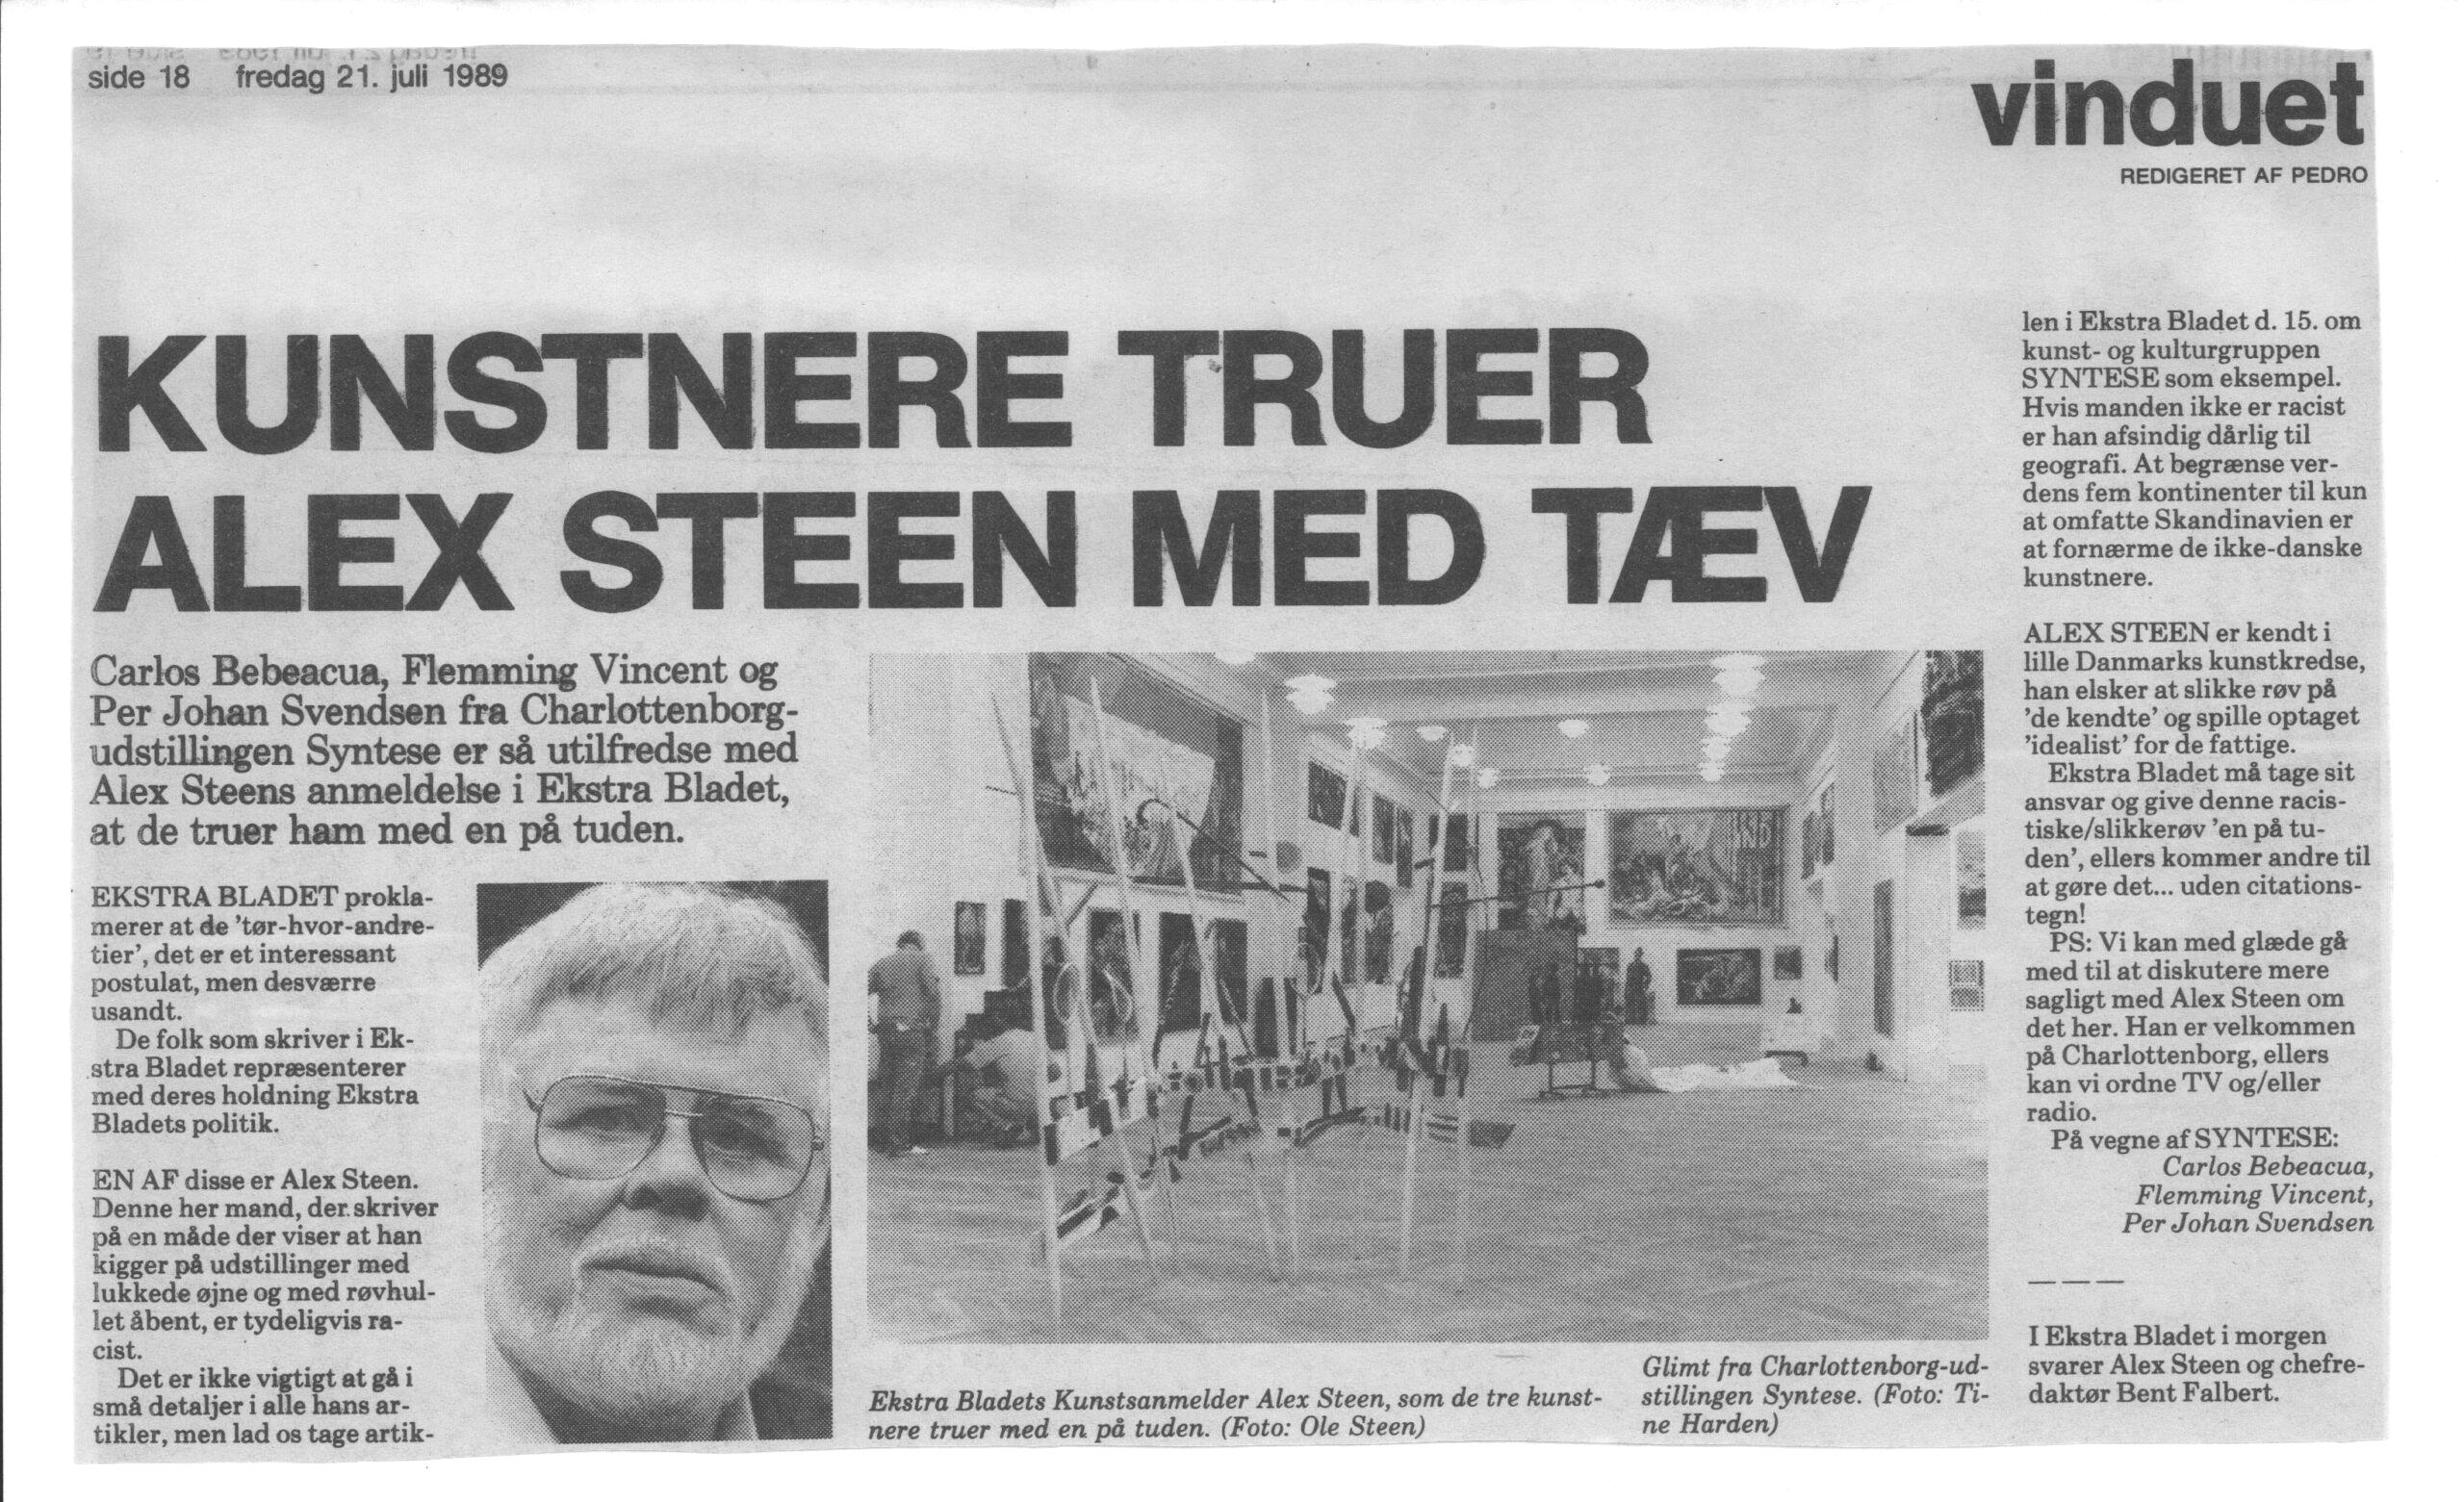 Kunstnere truer Alex Steen med tæv. Debatindlæg (Den lange rejse, Charlottenborg 1989, København). Syntese. Ekstrabladet.